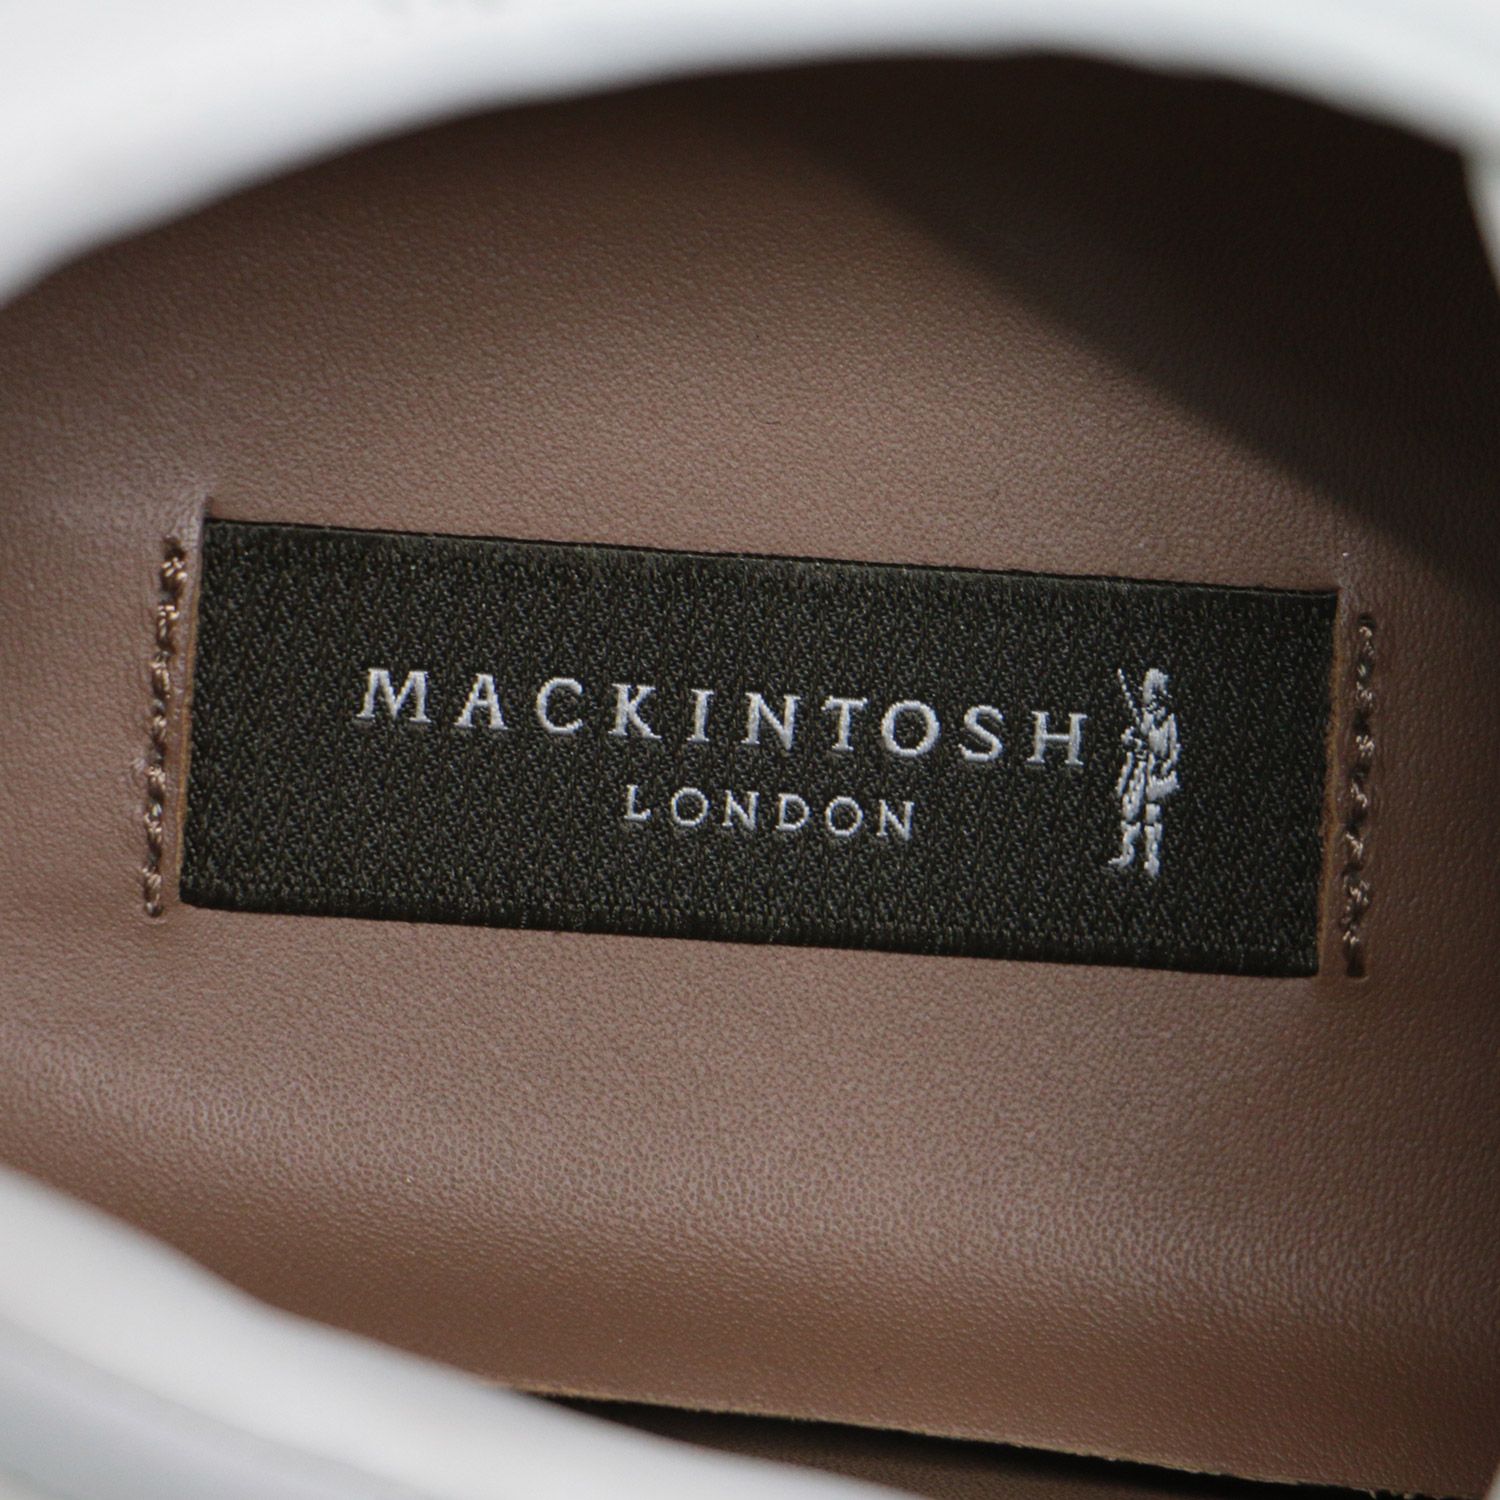 MACKINTOSH LONDON マッキントッシュ ロンドン レザー スニーカー シューズ 靴 23cm ローカット レースアップ ロゴ おしゃれ  シンプル 無地 きれいめ 大人女子 ブランド 上品